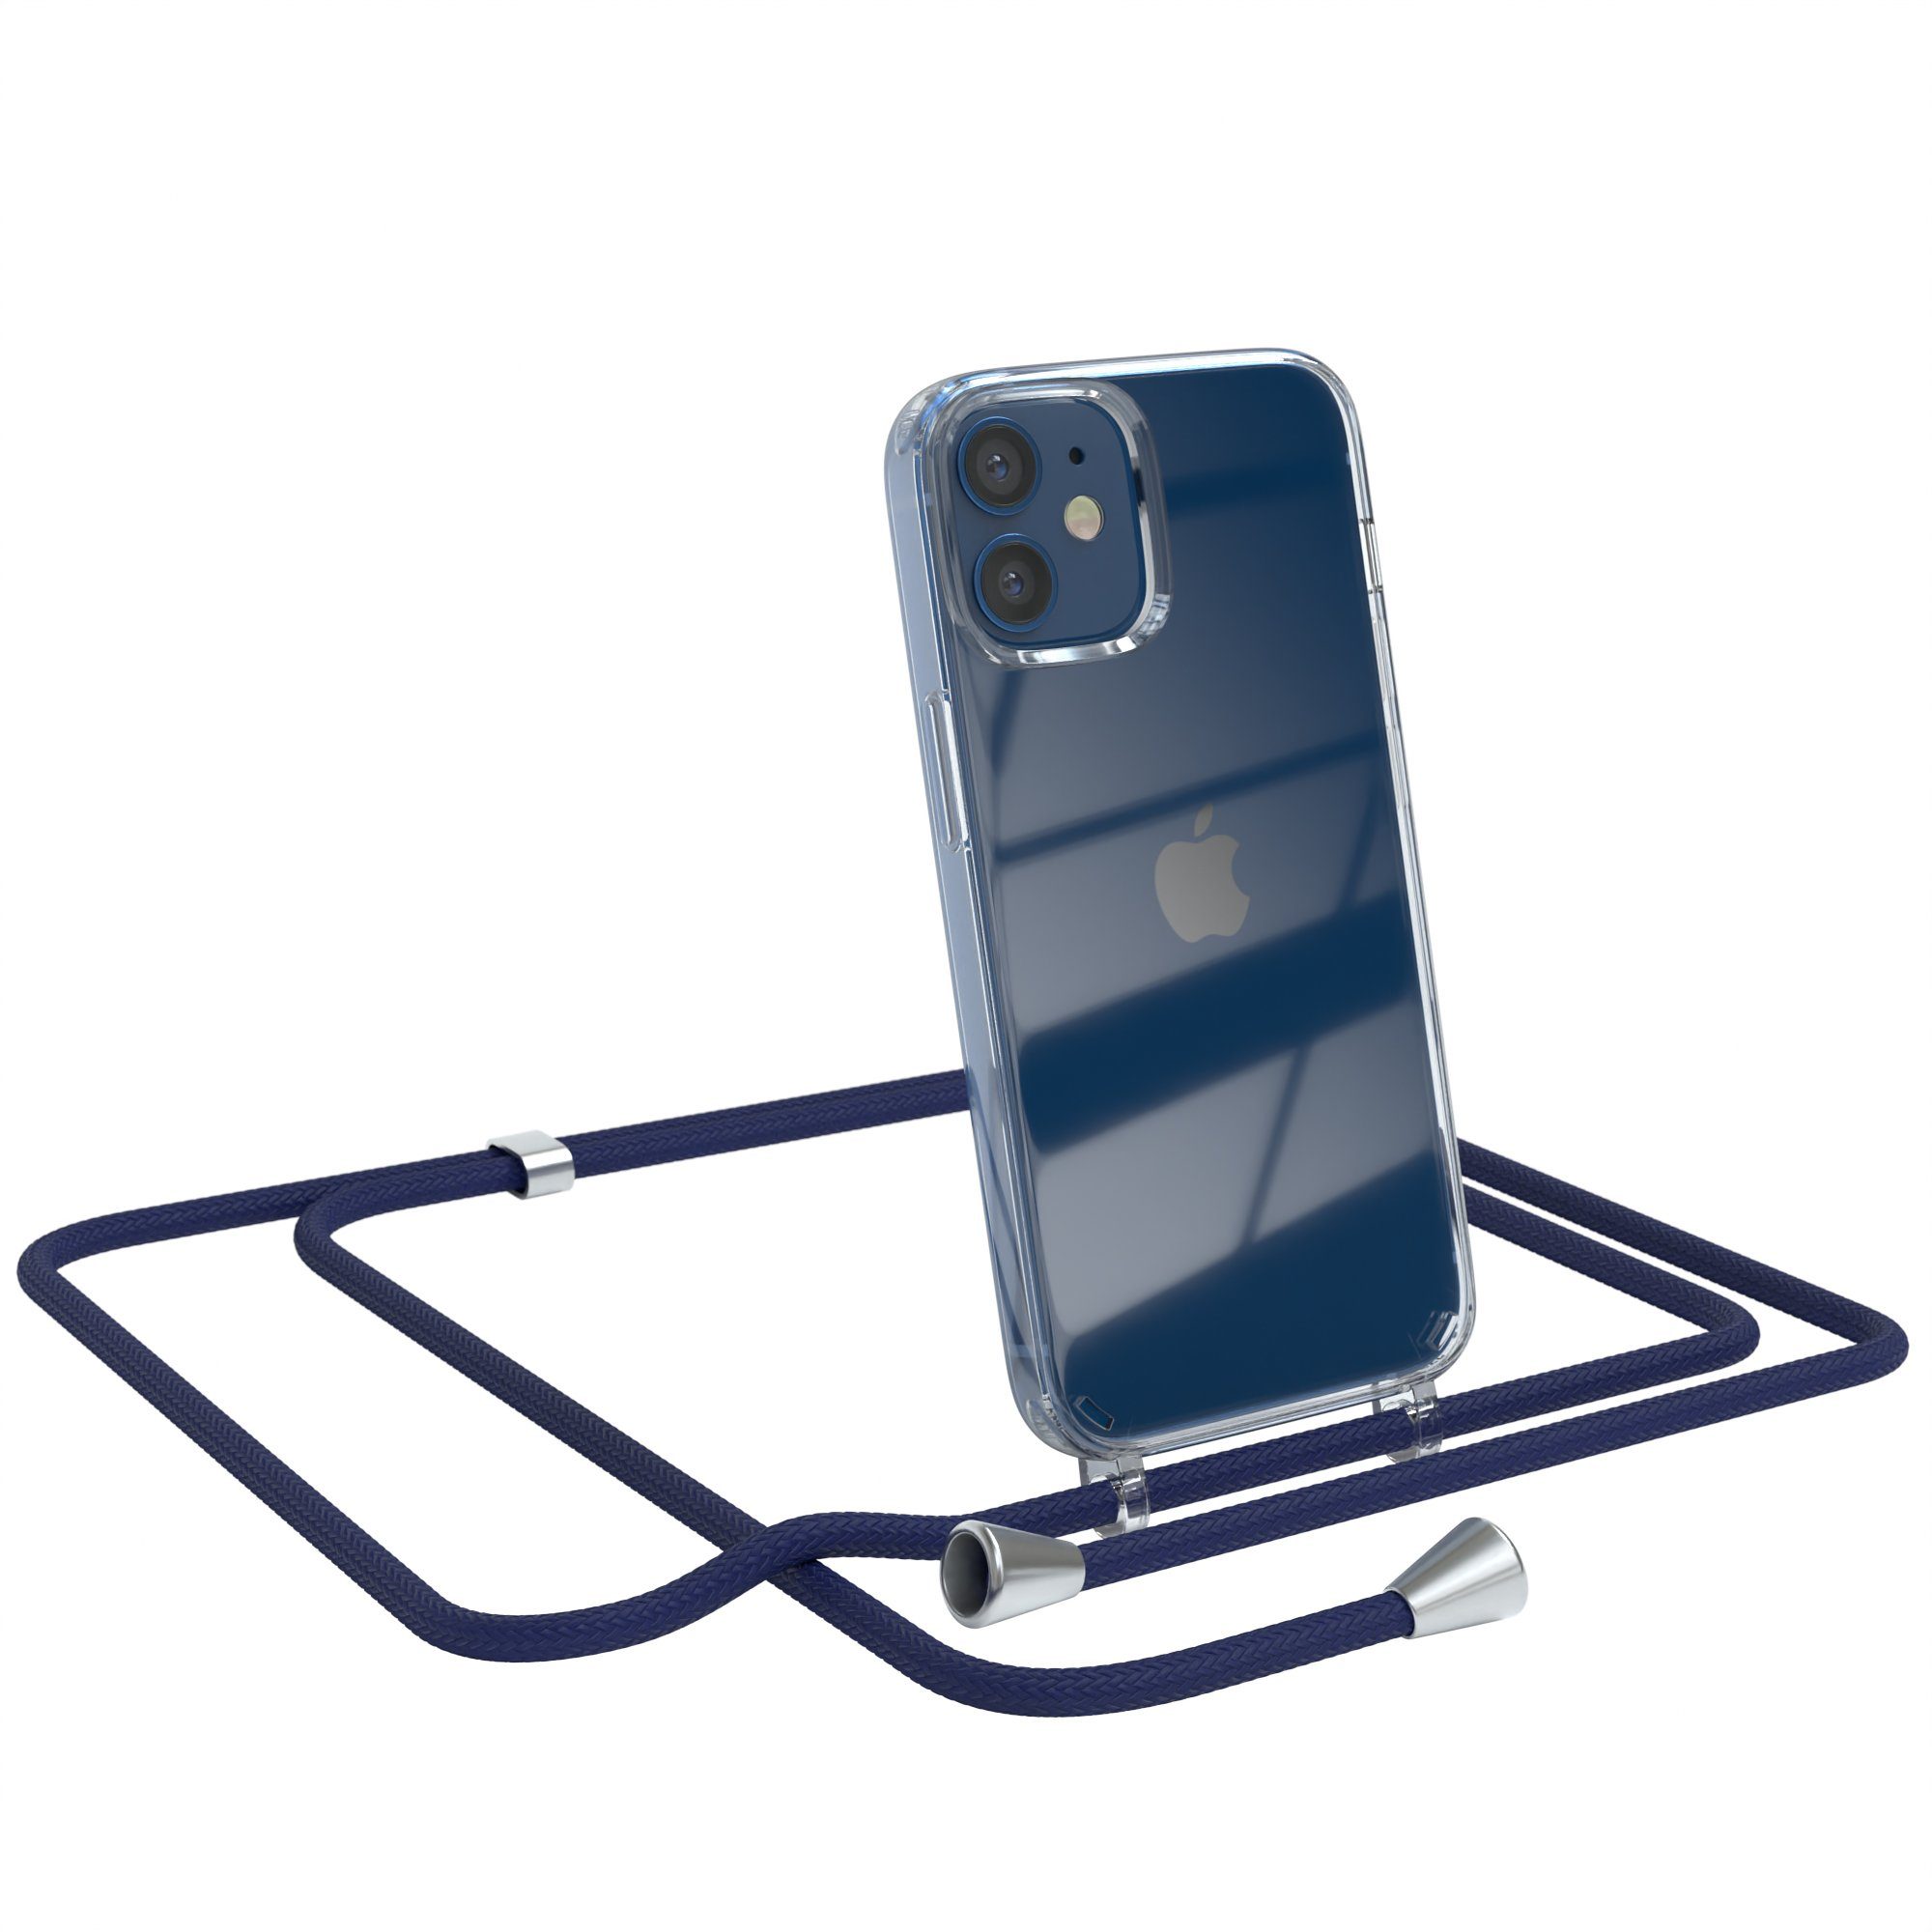 EAZY CASE Handykette Hülle mit Kette für Apple iPhone 12 Mini 5,4 Zoll, Kette zum Umhängen Backcover Etui Schutzhülle Hülle mit Band Case Blau